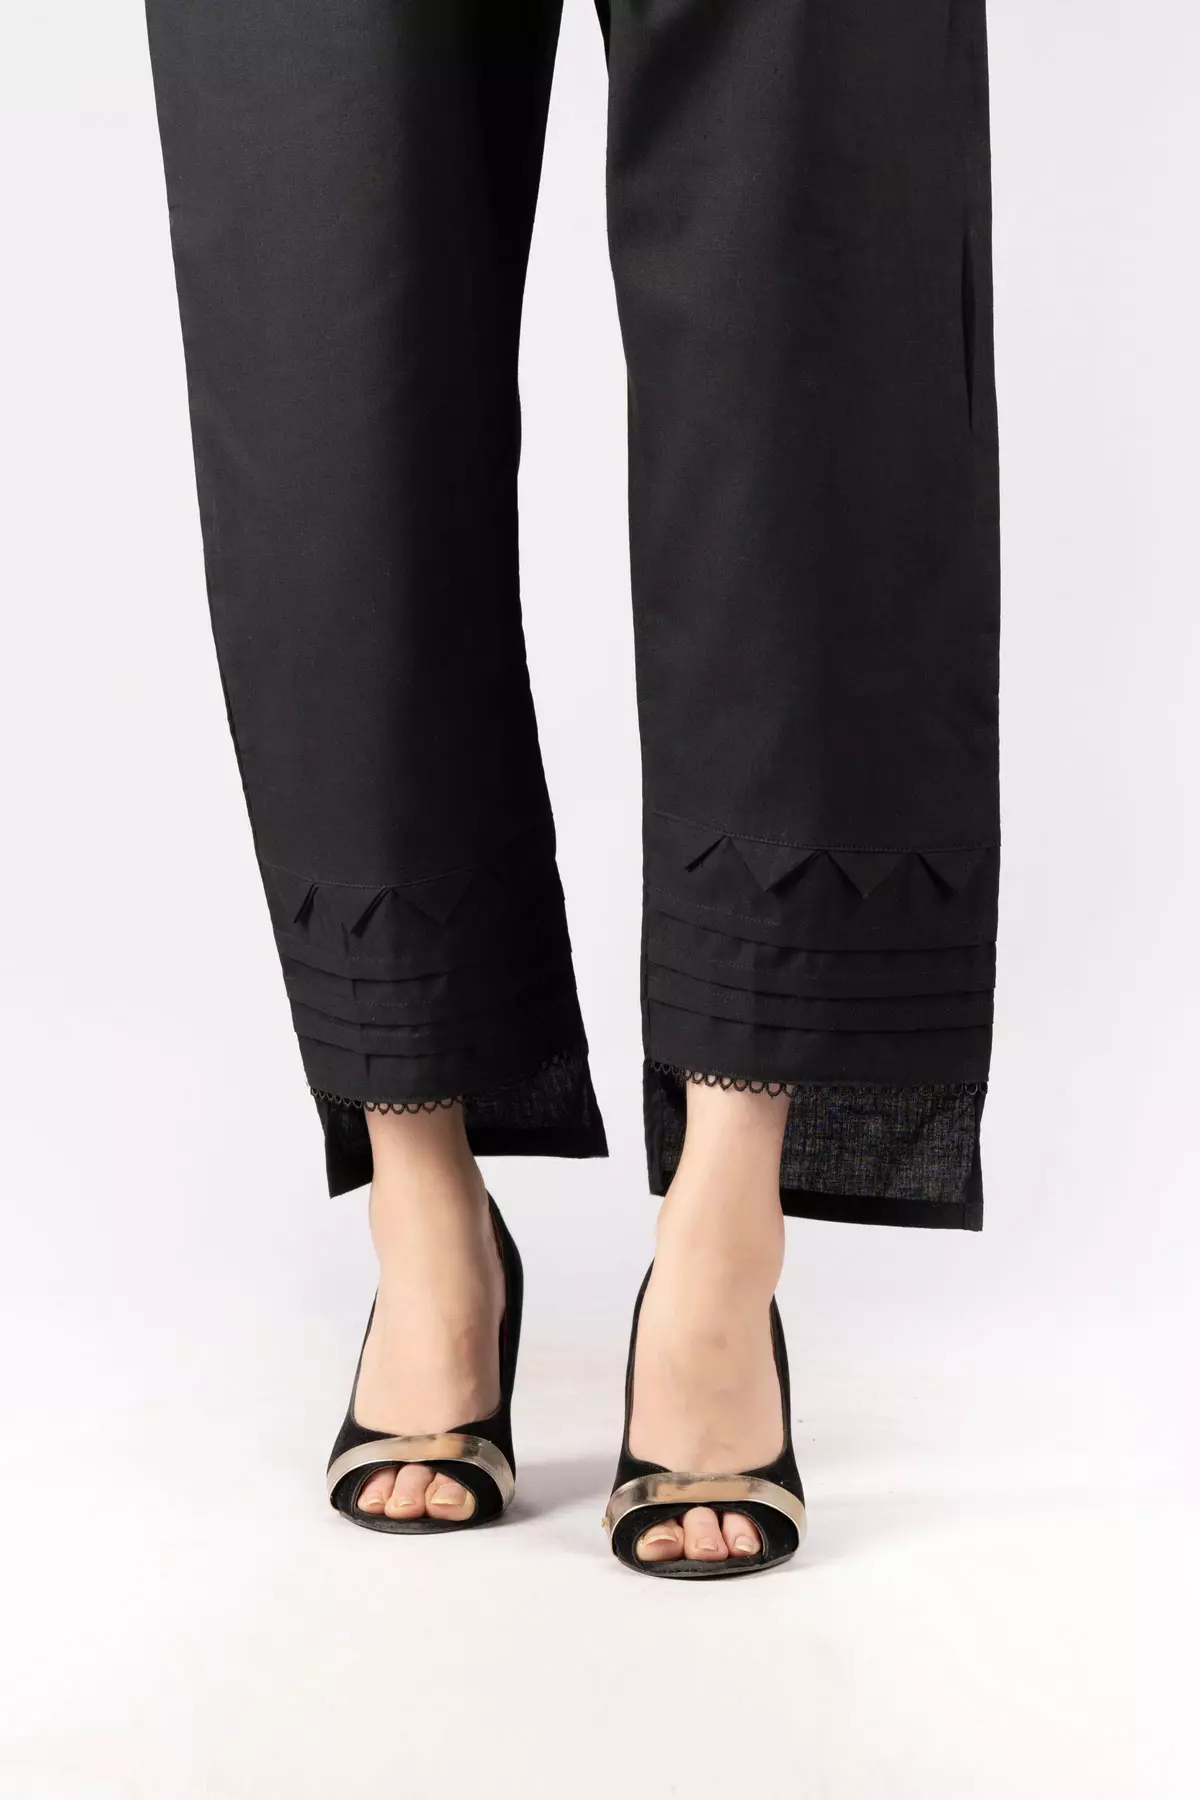 Online Ladies Trousers Shopping In Pakistan | Trousers women, Work trousers  women, Beige pants